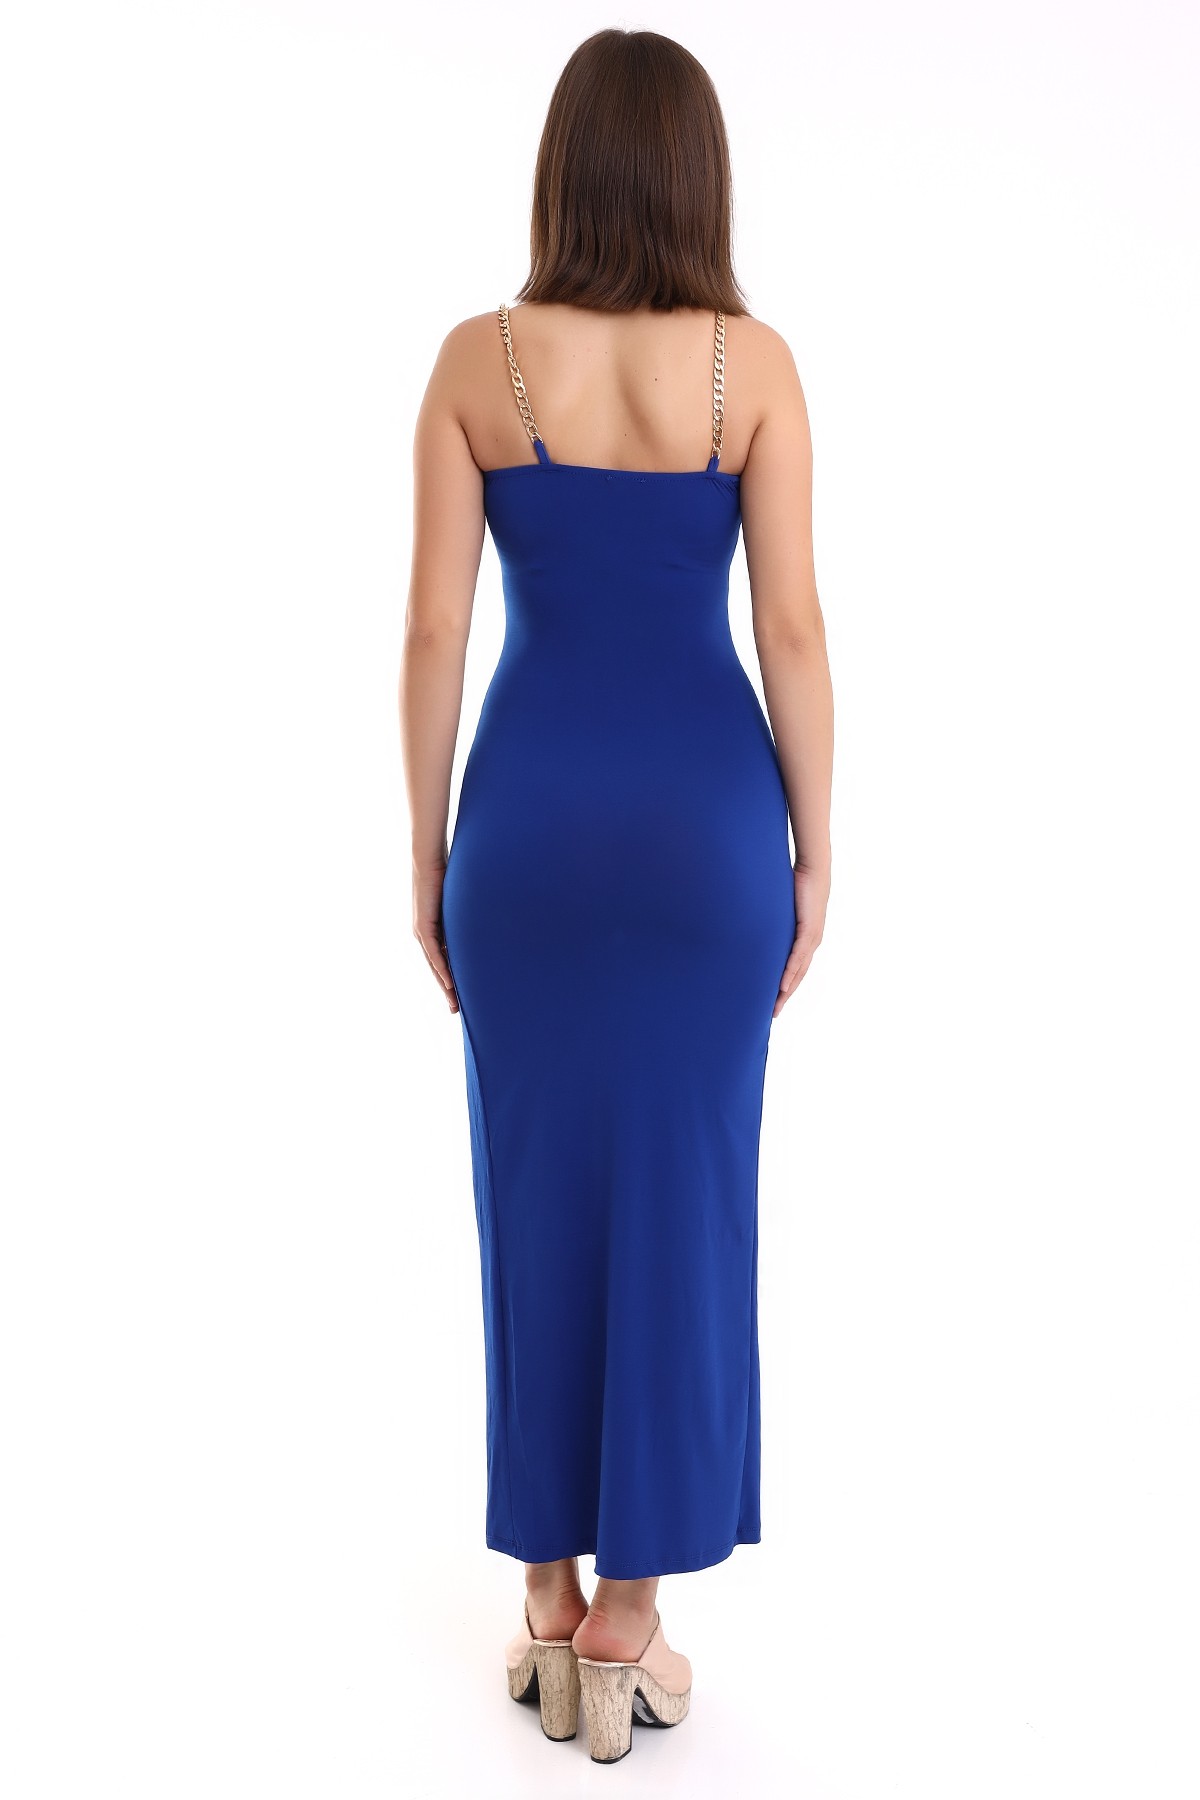 Saks Mavi Askılı Dekolteli Zincirli Balık Model Elbise Mezuniyet Elbisesi KLS0015